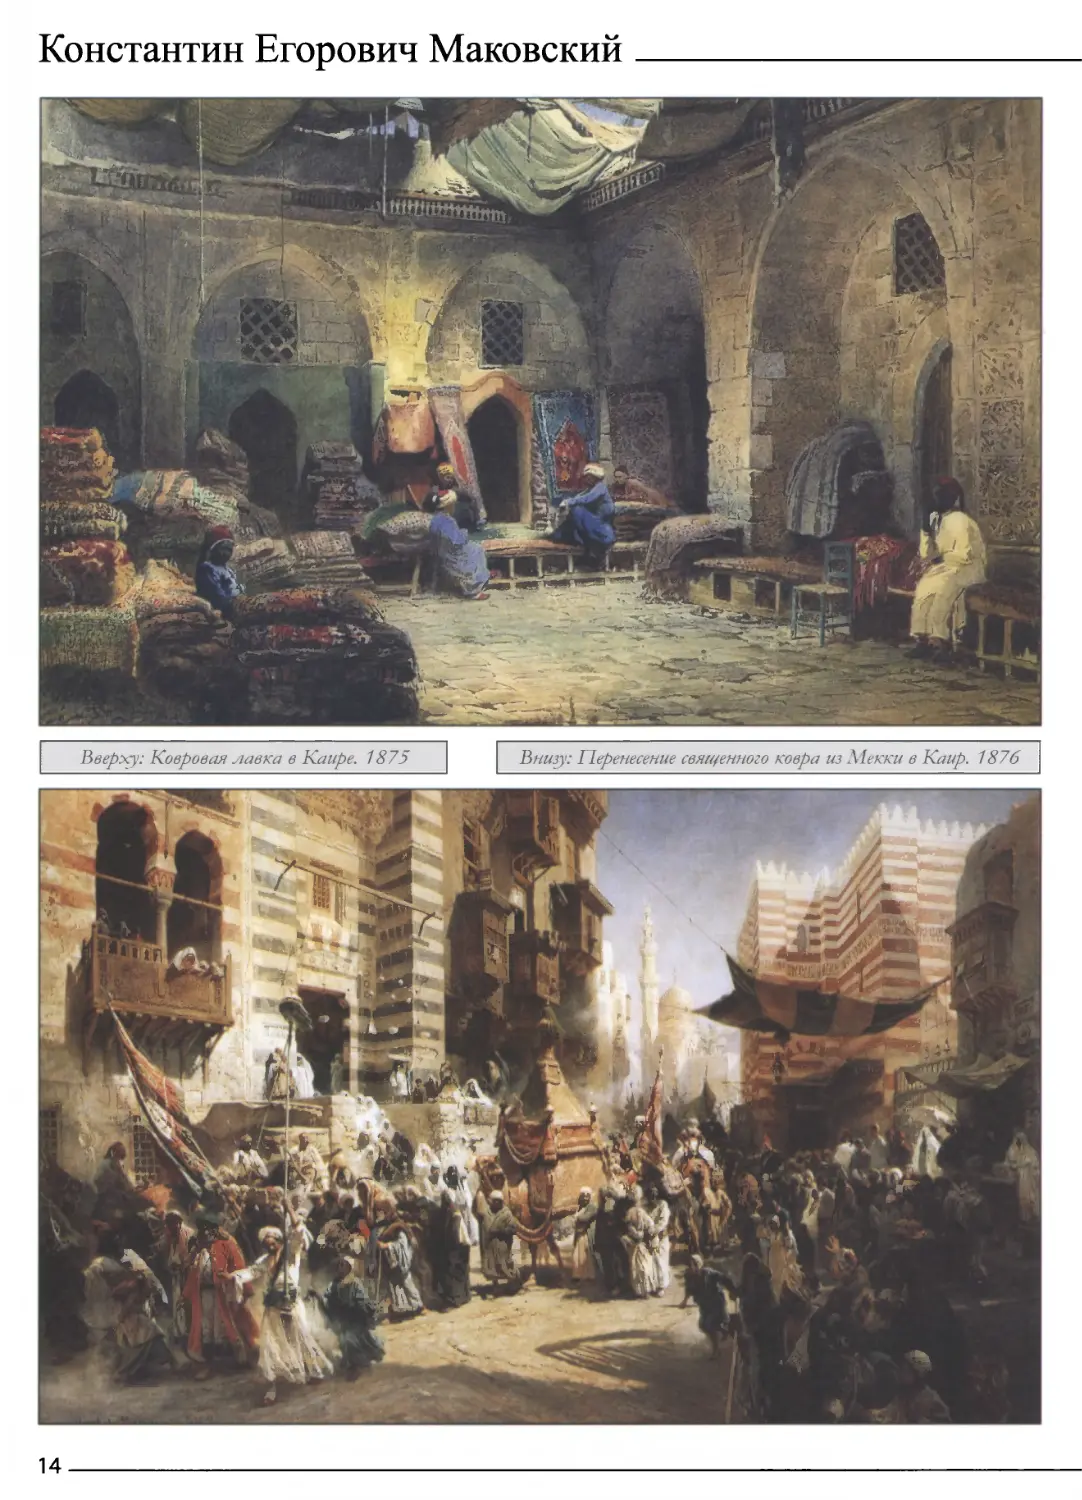 Ковровая лавка в Каире. 1875
Перенесение священного ковра из Мекки в Каир. 1876